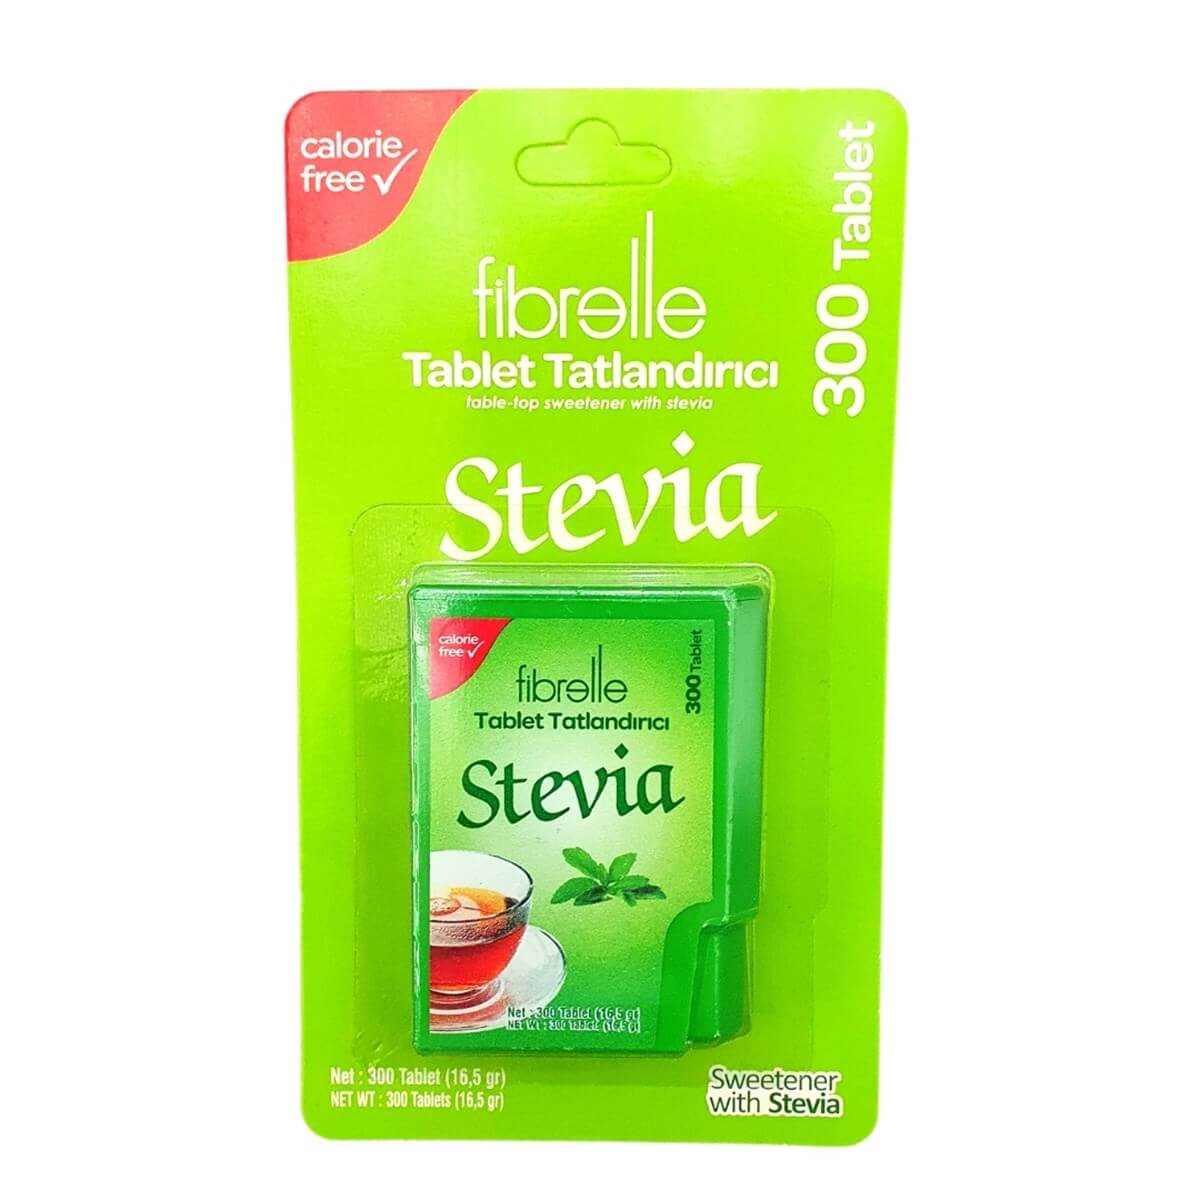 Fibrelle Stevia Tablet Tatlandırıcı 300 Tablet